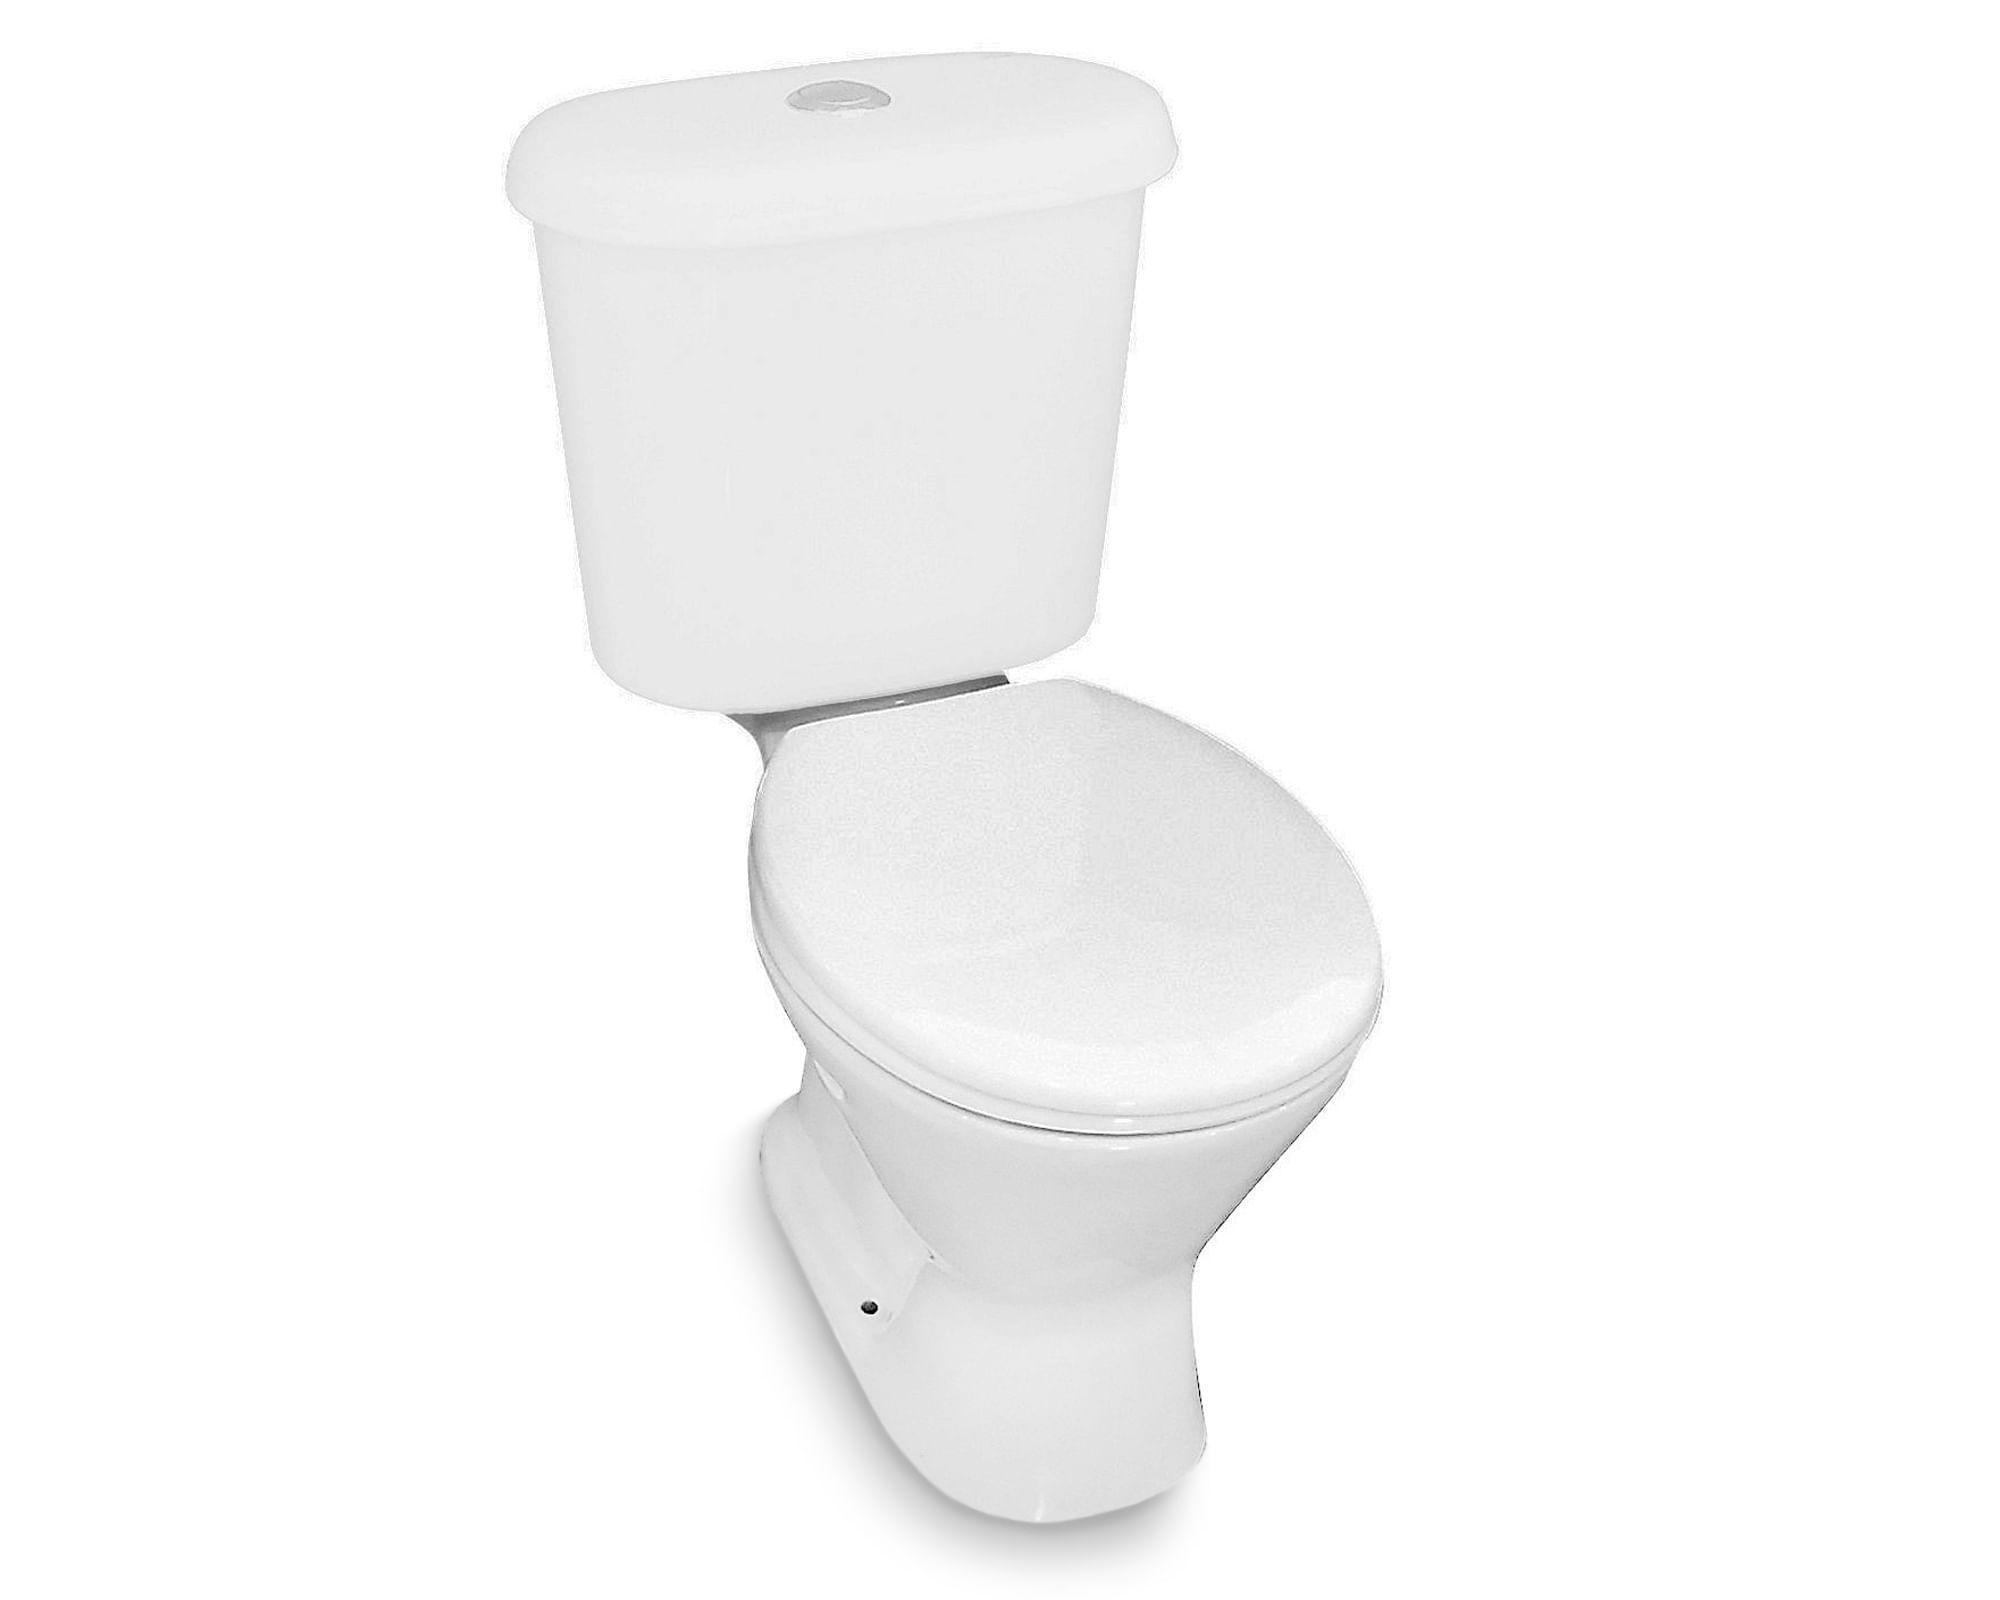 Taza WC 20,5 cm con asiento Kinder blanco Fanaloza